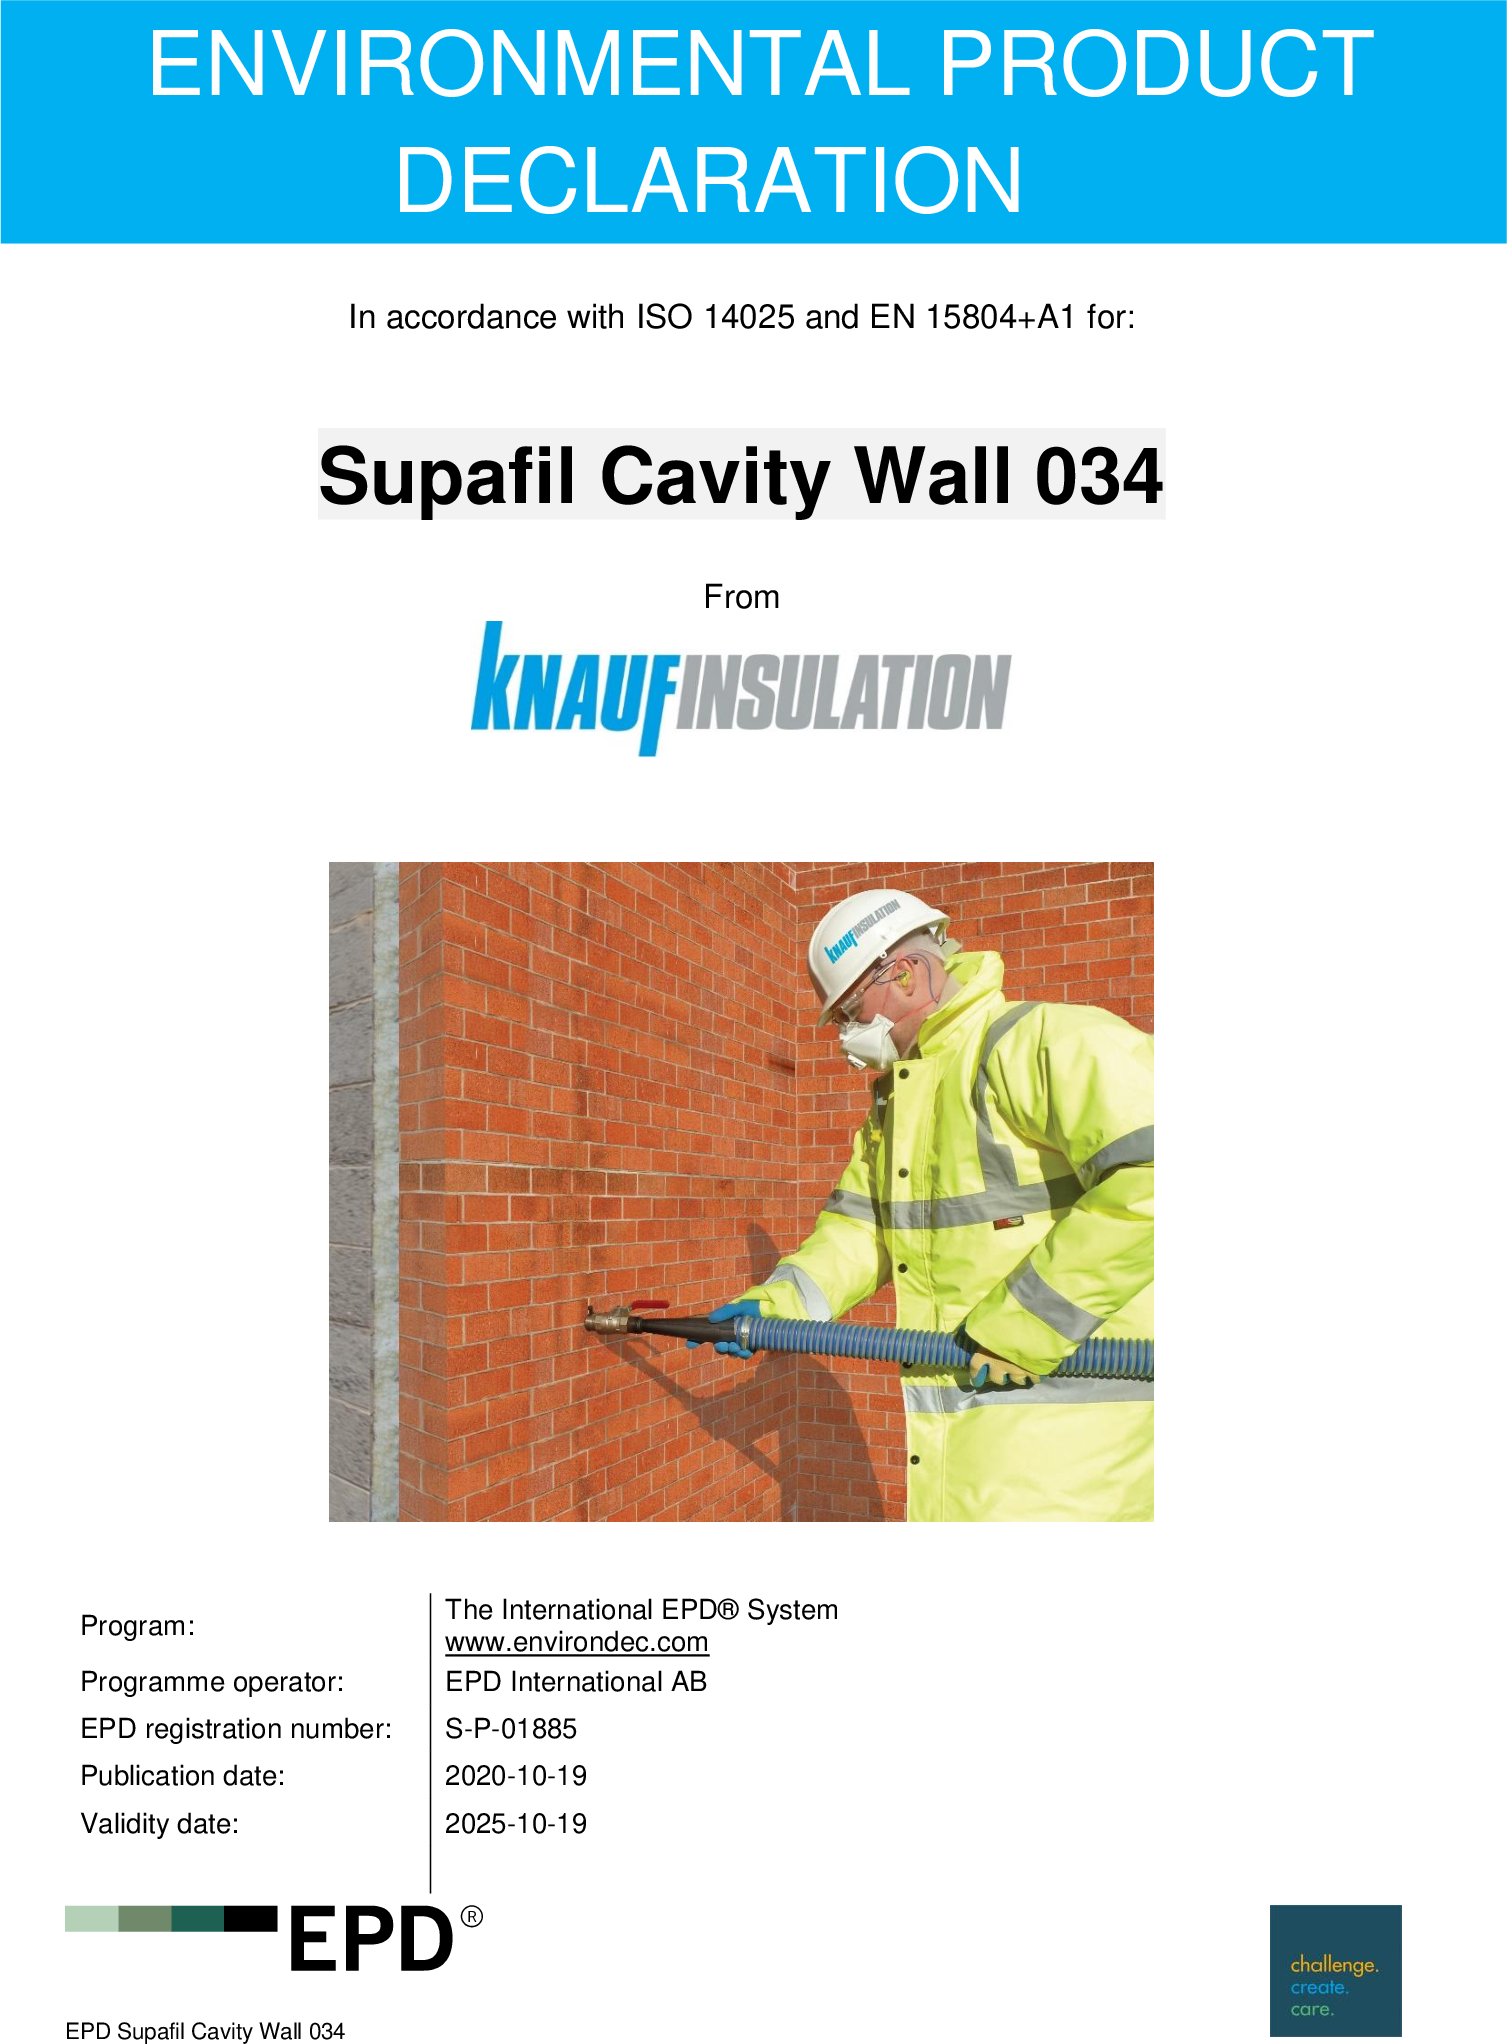 Supafil Cavity Wall 034